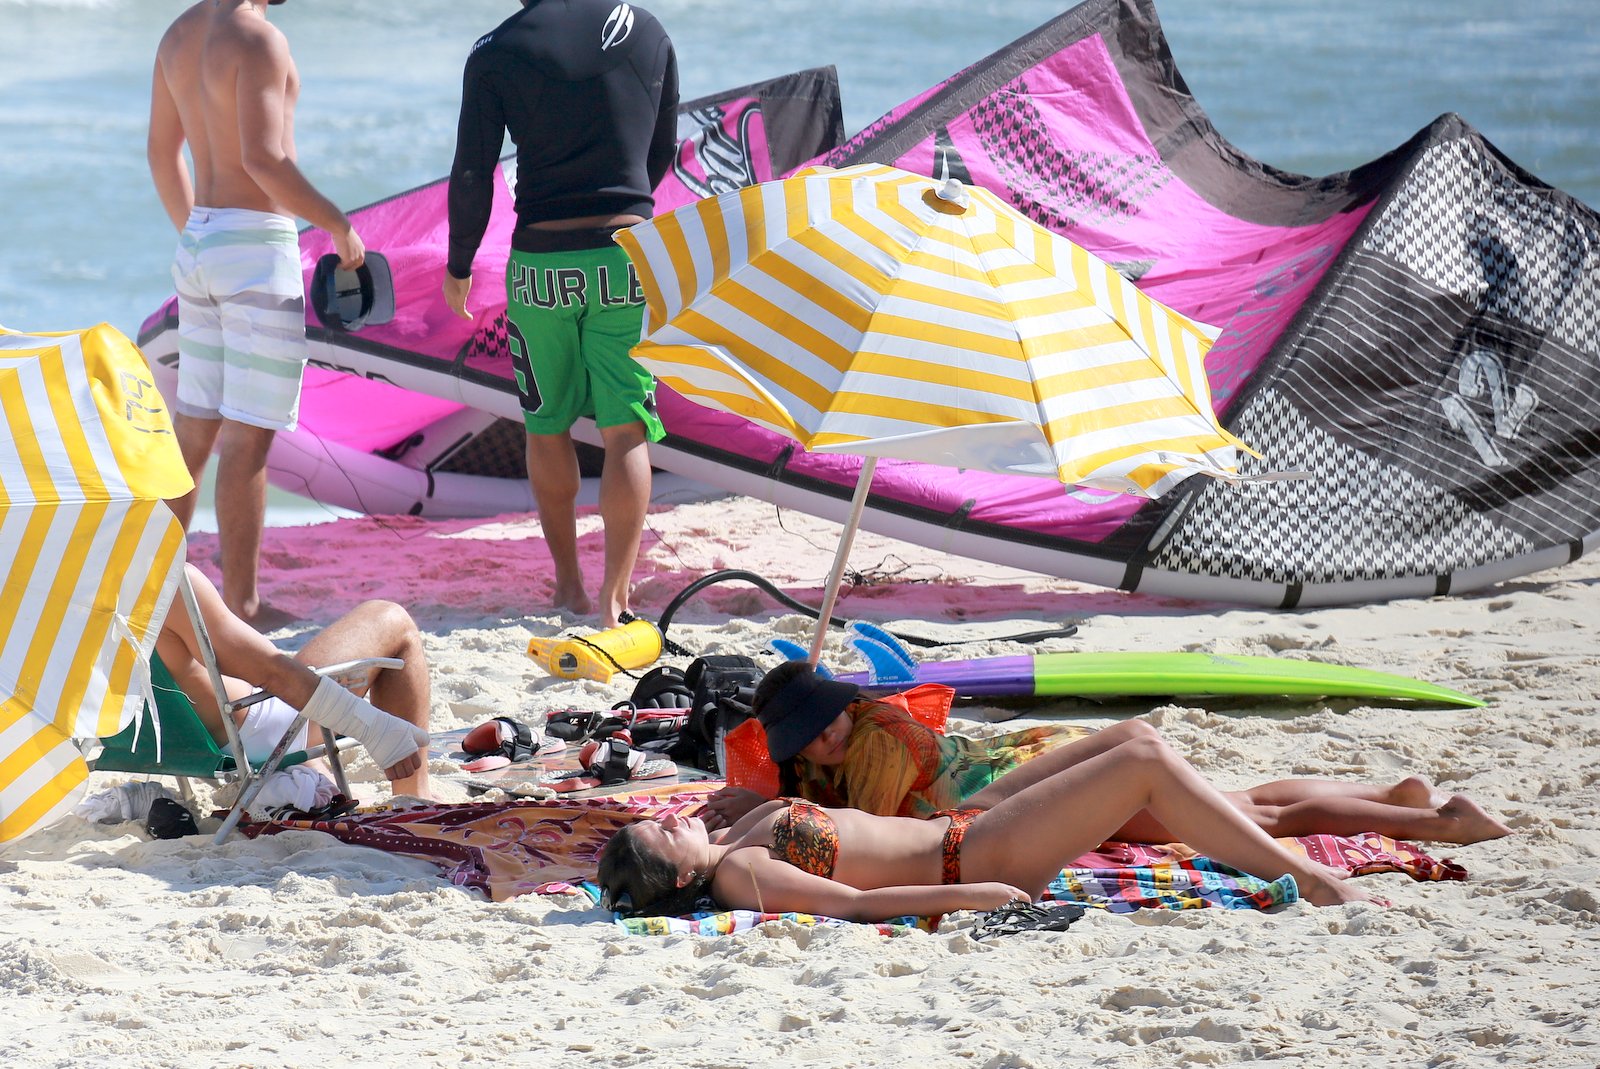 Grávida, Deborah Secco relaxa em praia, mas faz questão de se proteger do sol. 